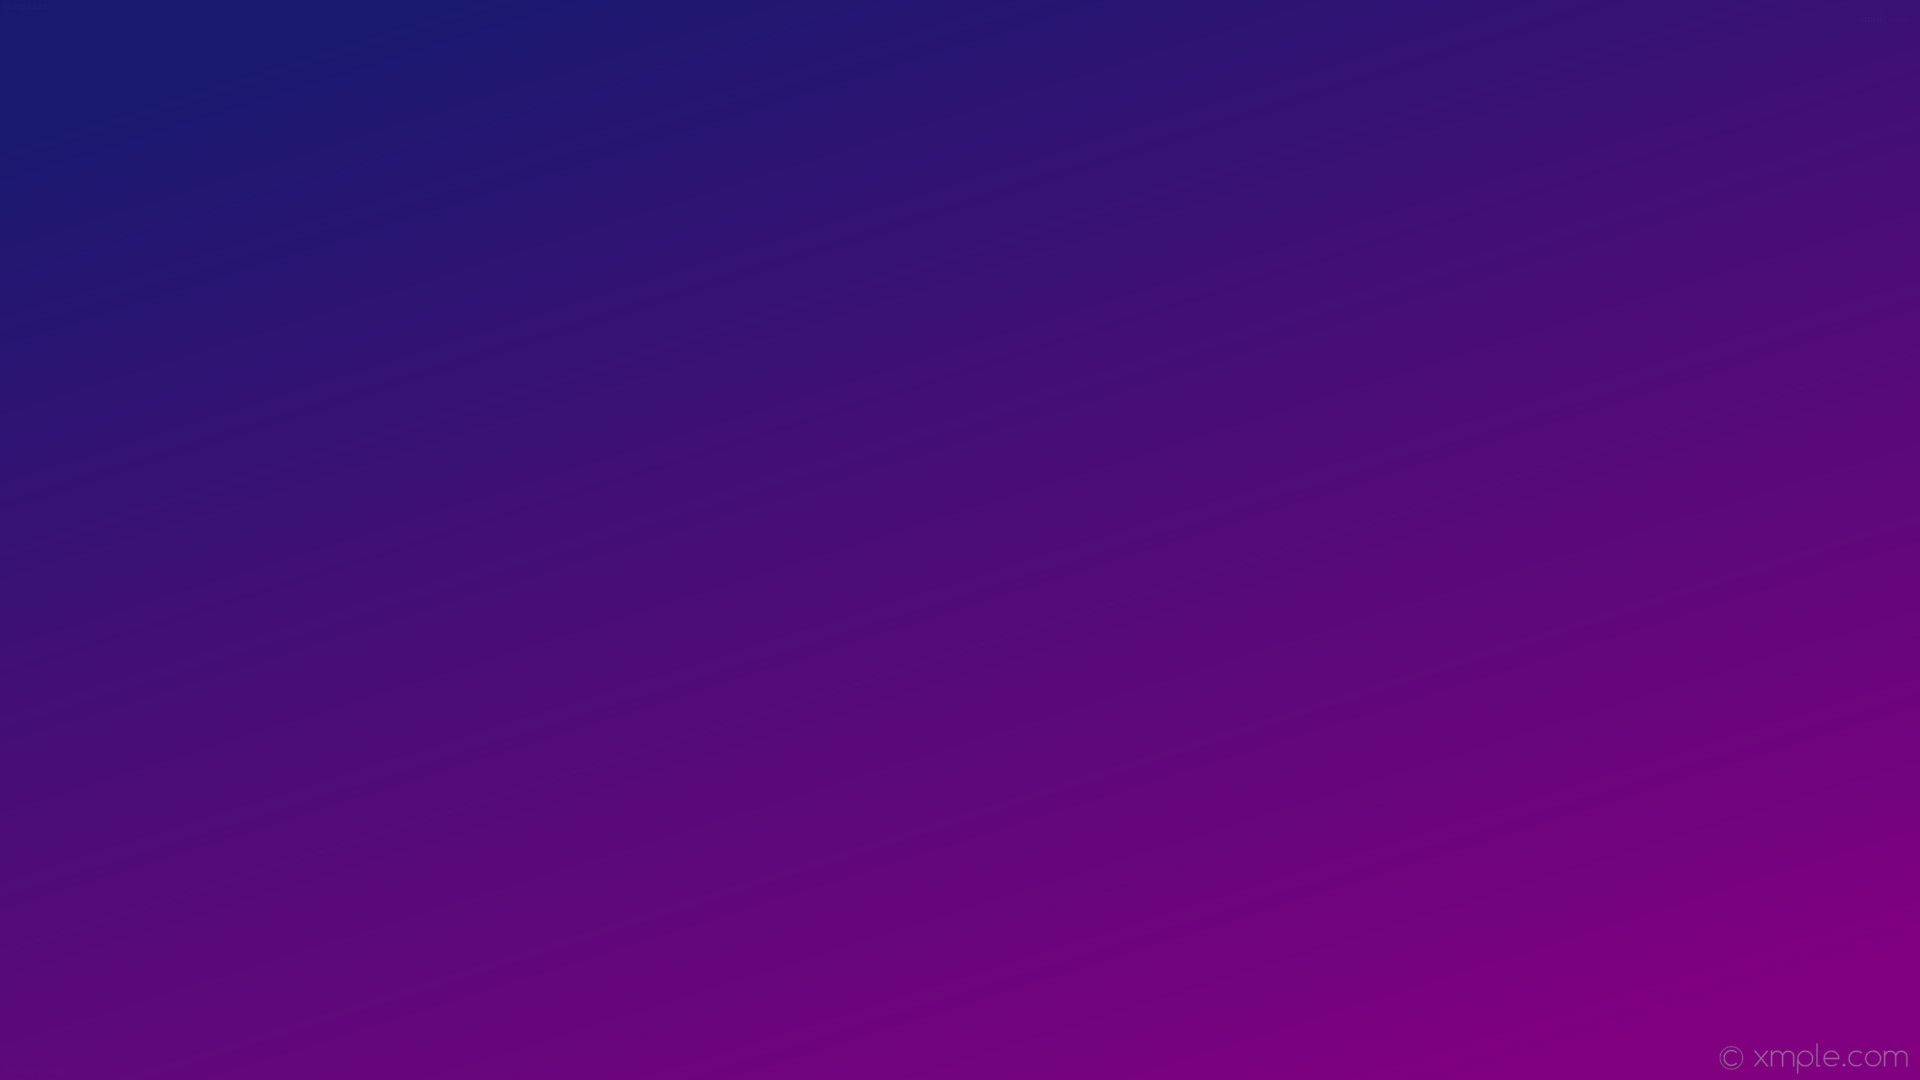 1920x1080 wallpaper blue purple gradient linear midnight blue #191970 #800080 135Â°